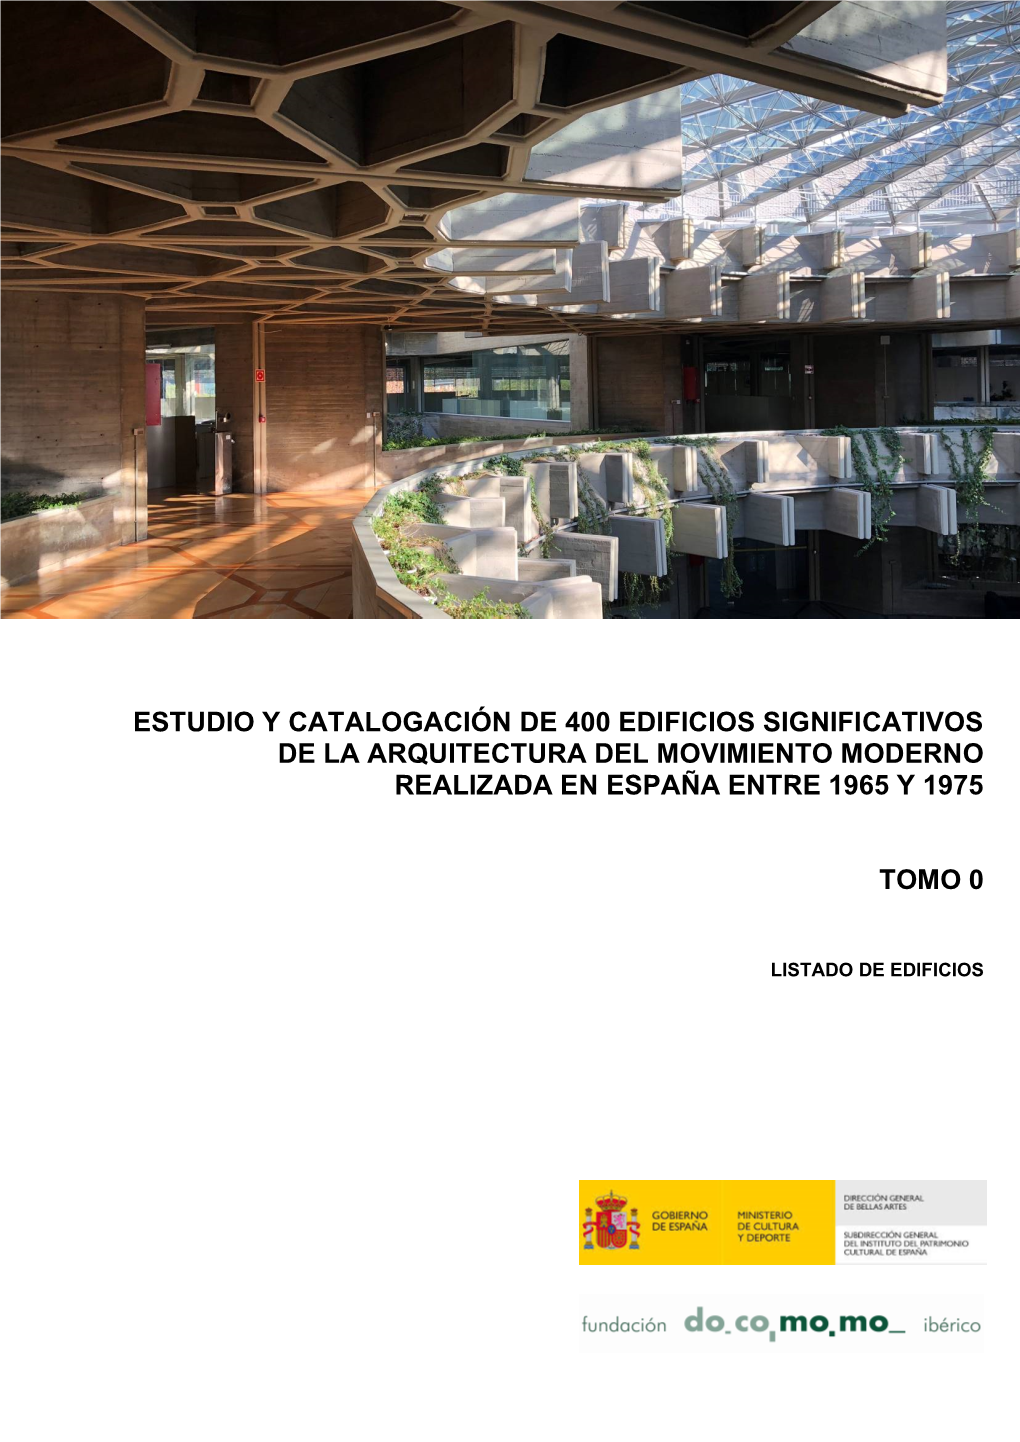 Estudio Y Catalogación De 400 Edificios Significativos De La Arquitectura Del Movimiento Moderno Realizada En España Entre 1965 Y 1975